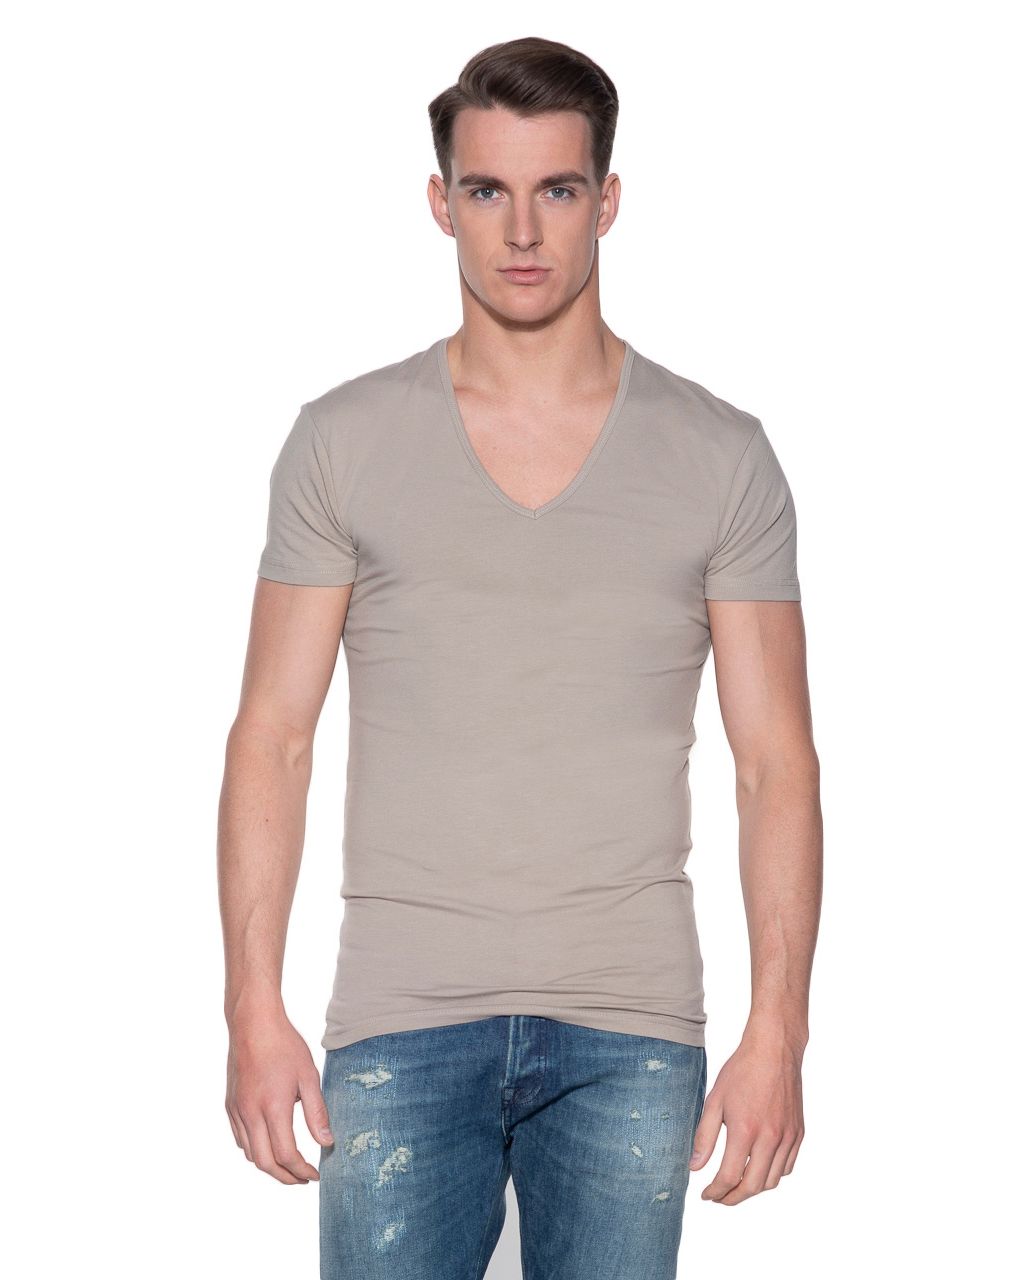 adelaar Darmen Ijsbeer Slater Stretch T-shirt Diepe V-hals 2-pack | Shop nu - Only for Men